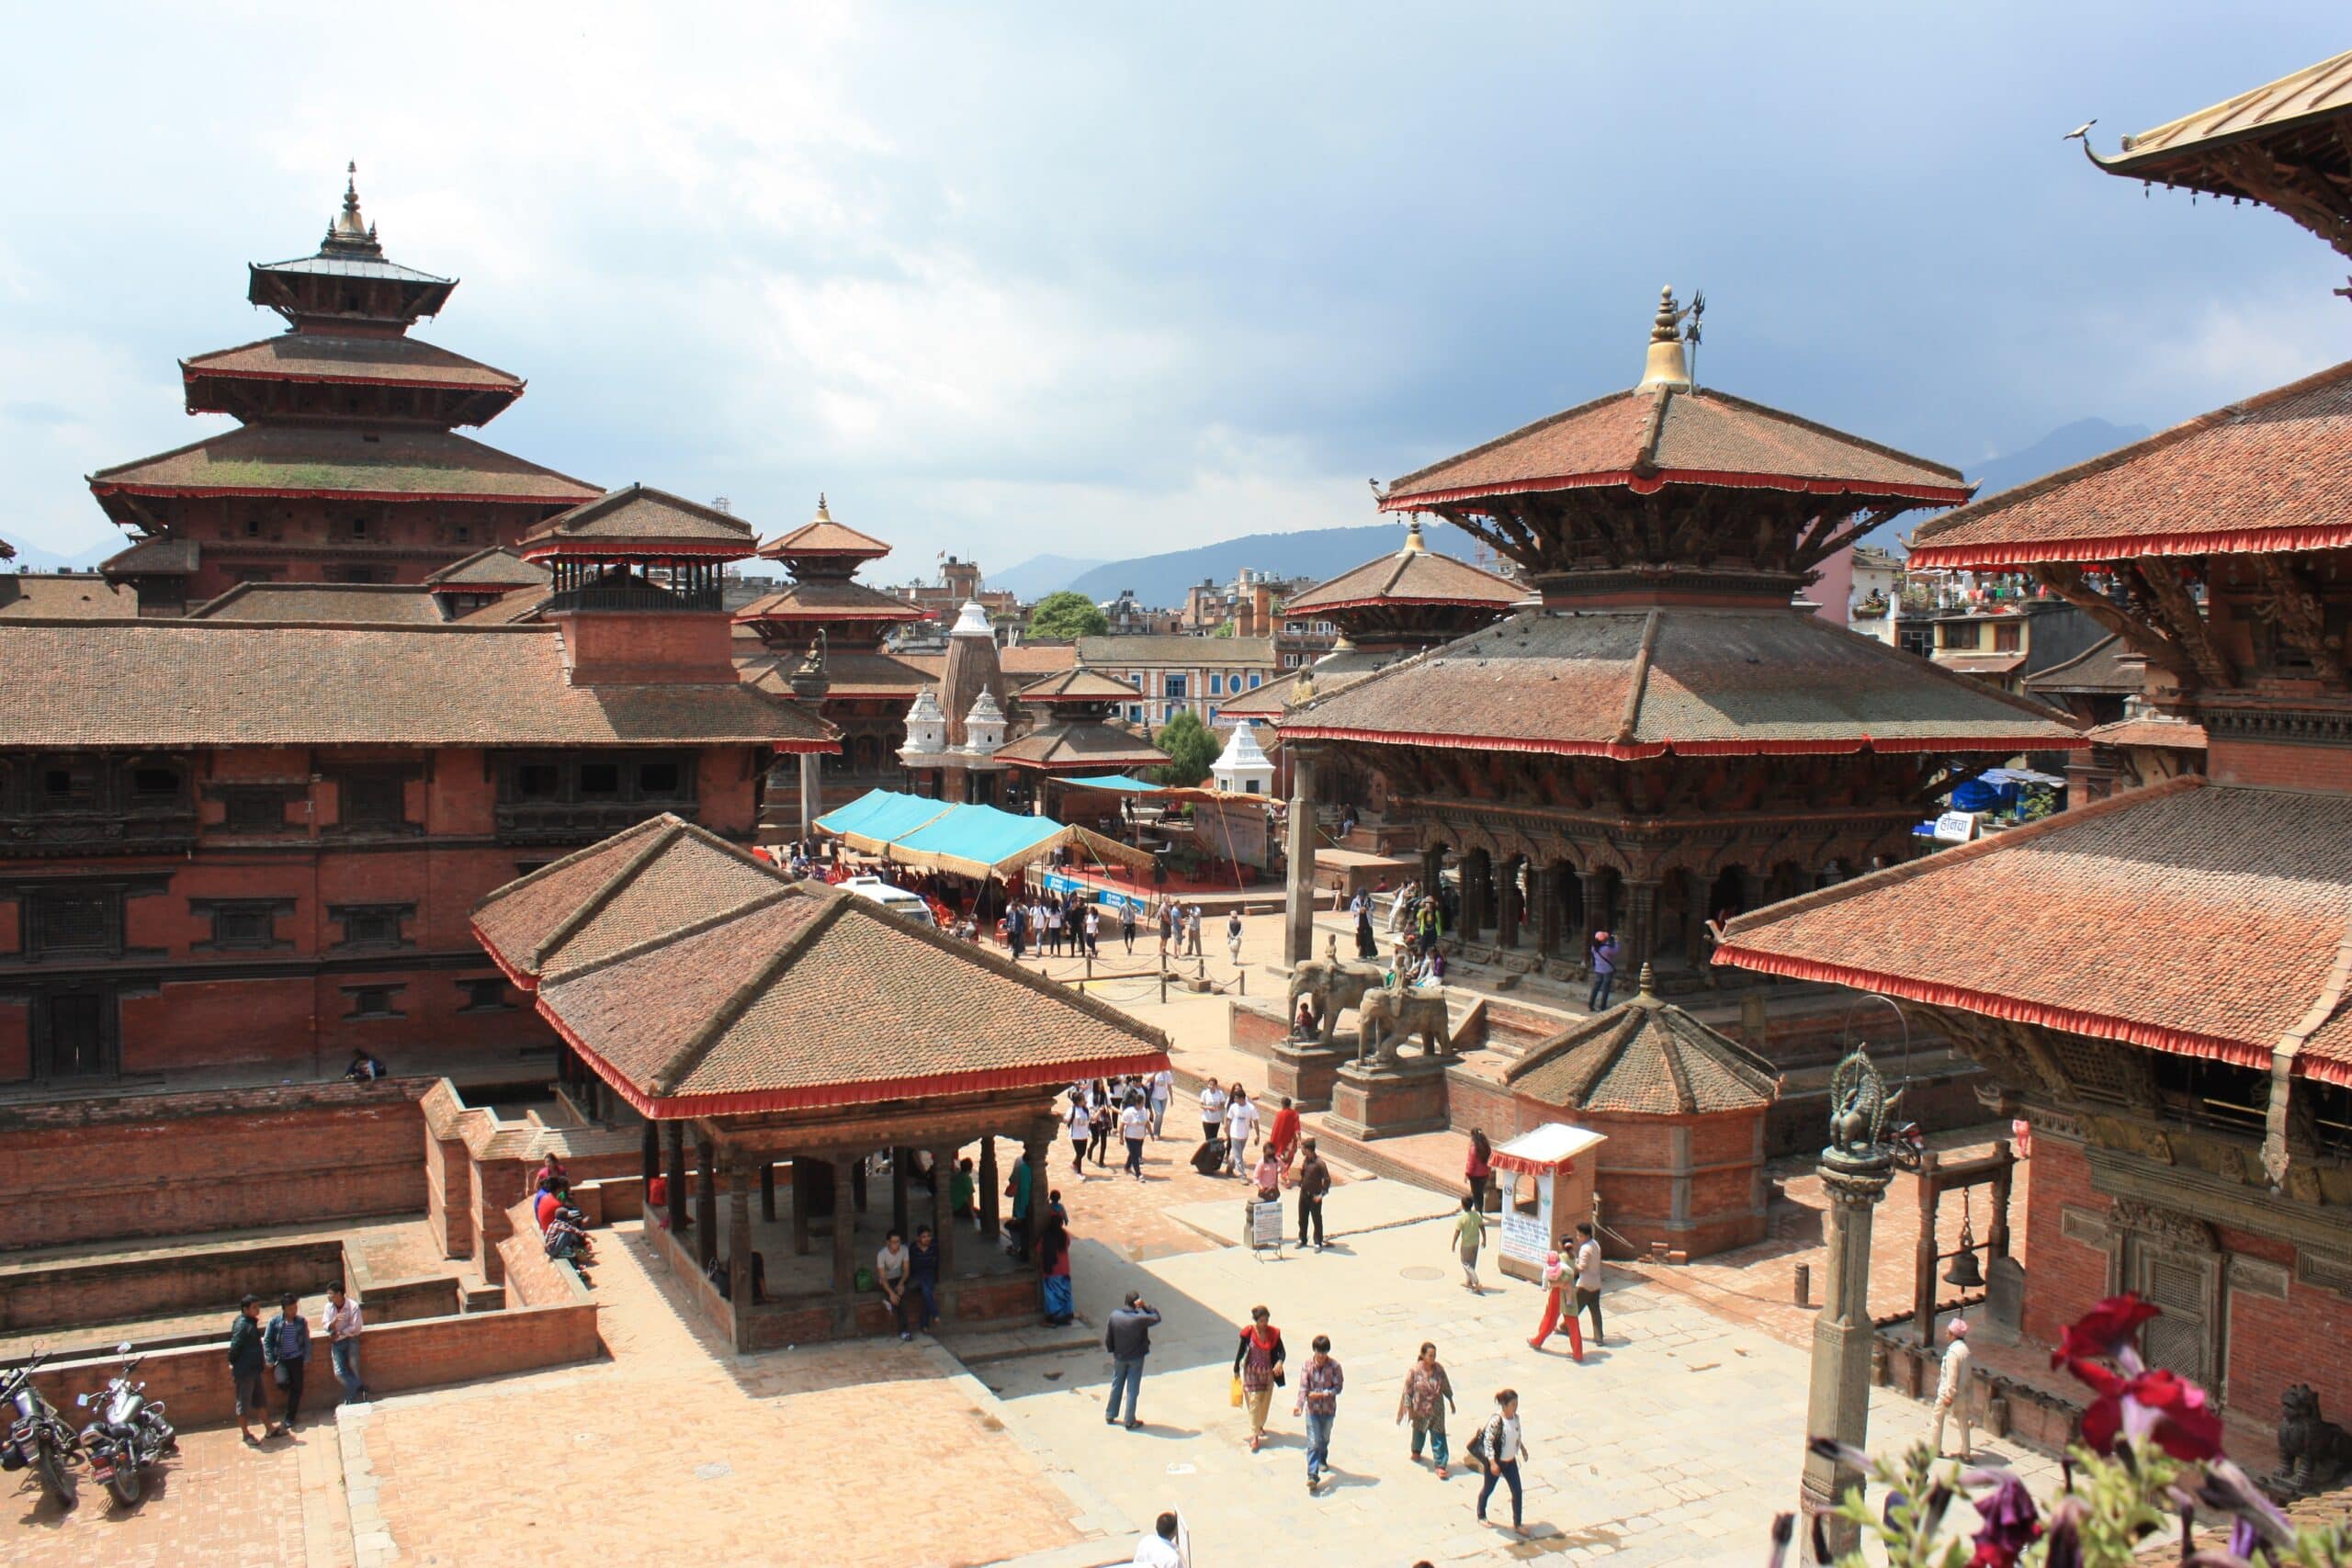 Templos marrom e vermelhos embaixo do céu azul para ilustrar o post de seguro viagem Nepal. Há pessoas caminhando entre as construções. - Foto: via Pxhere